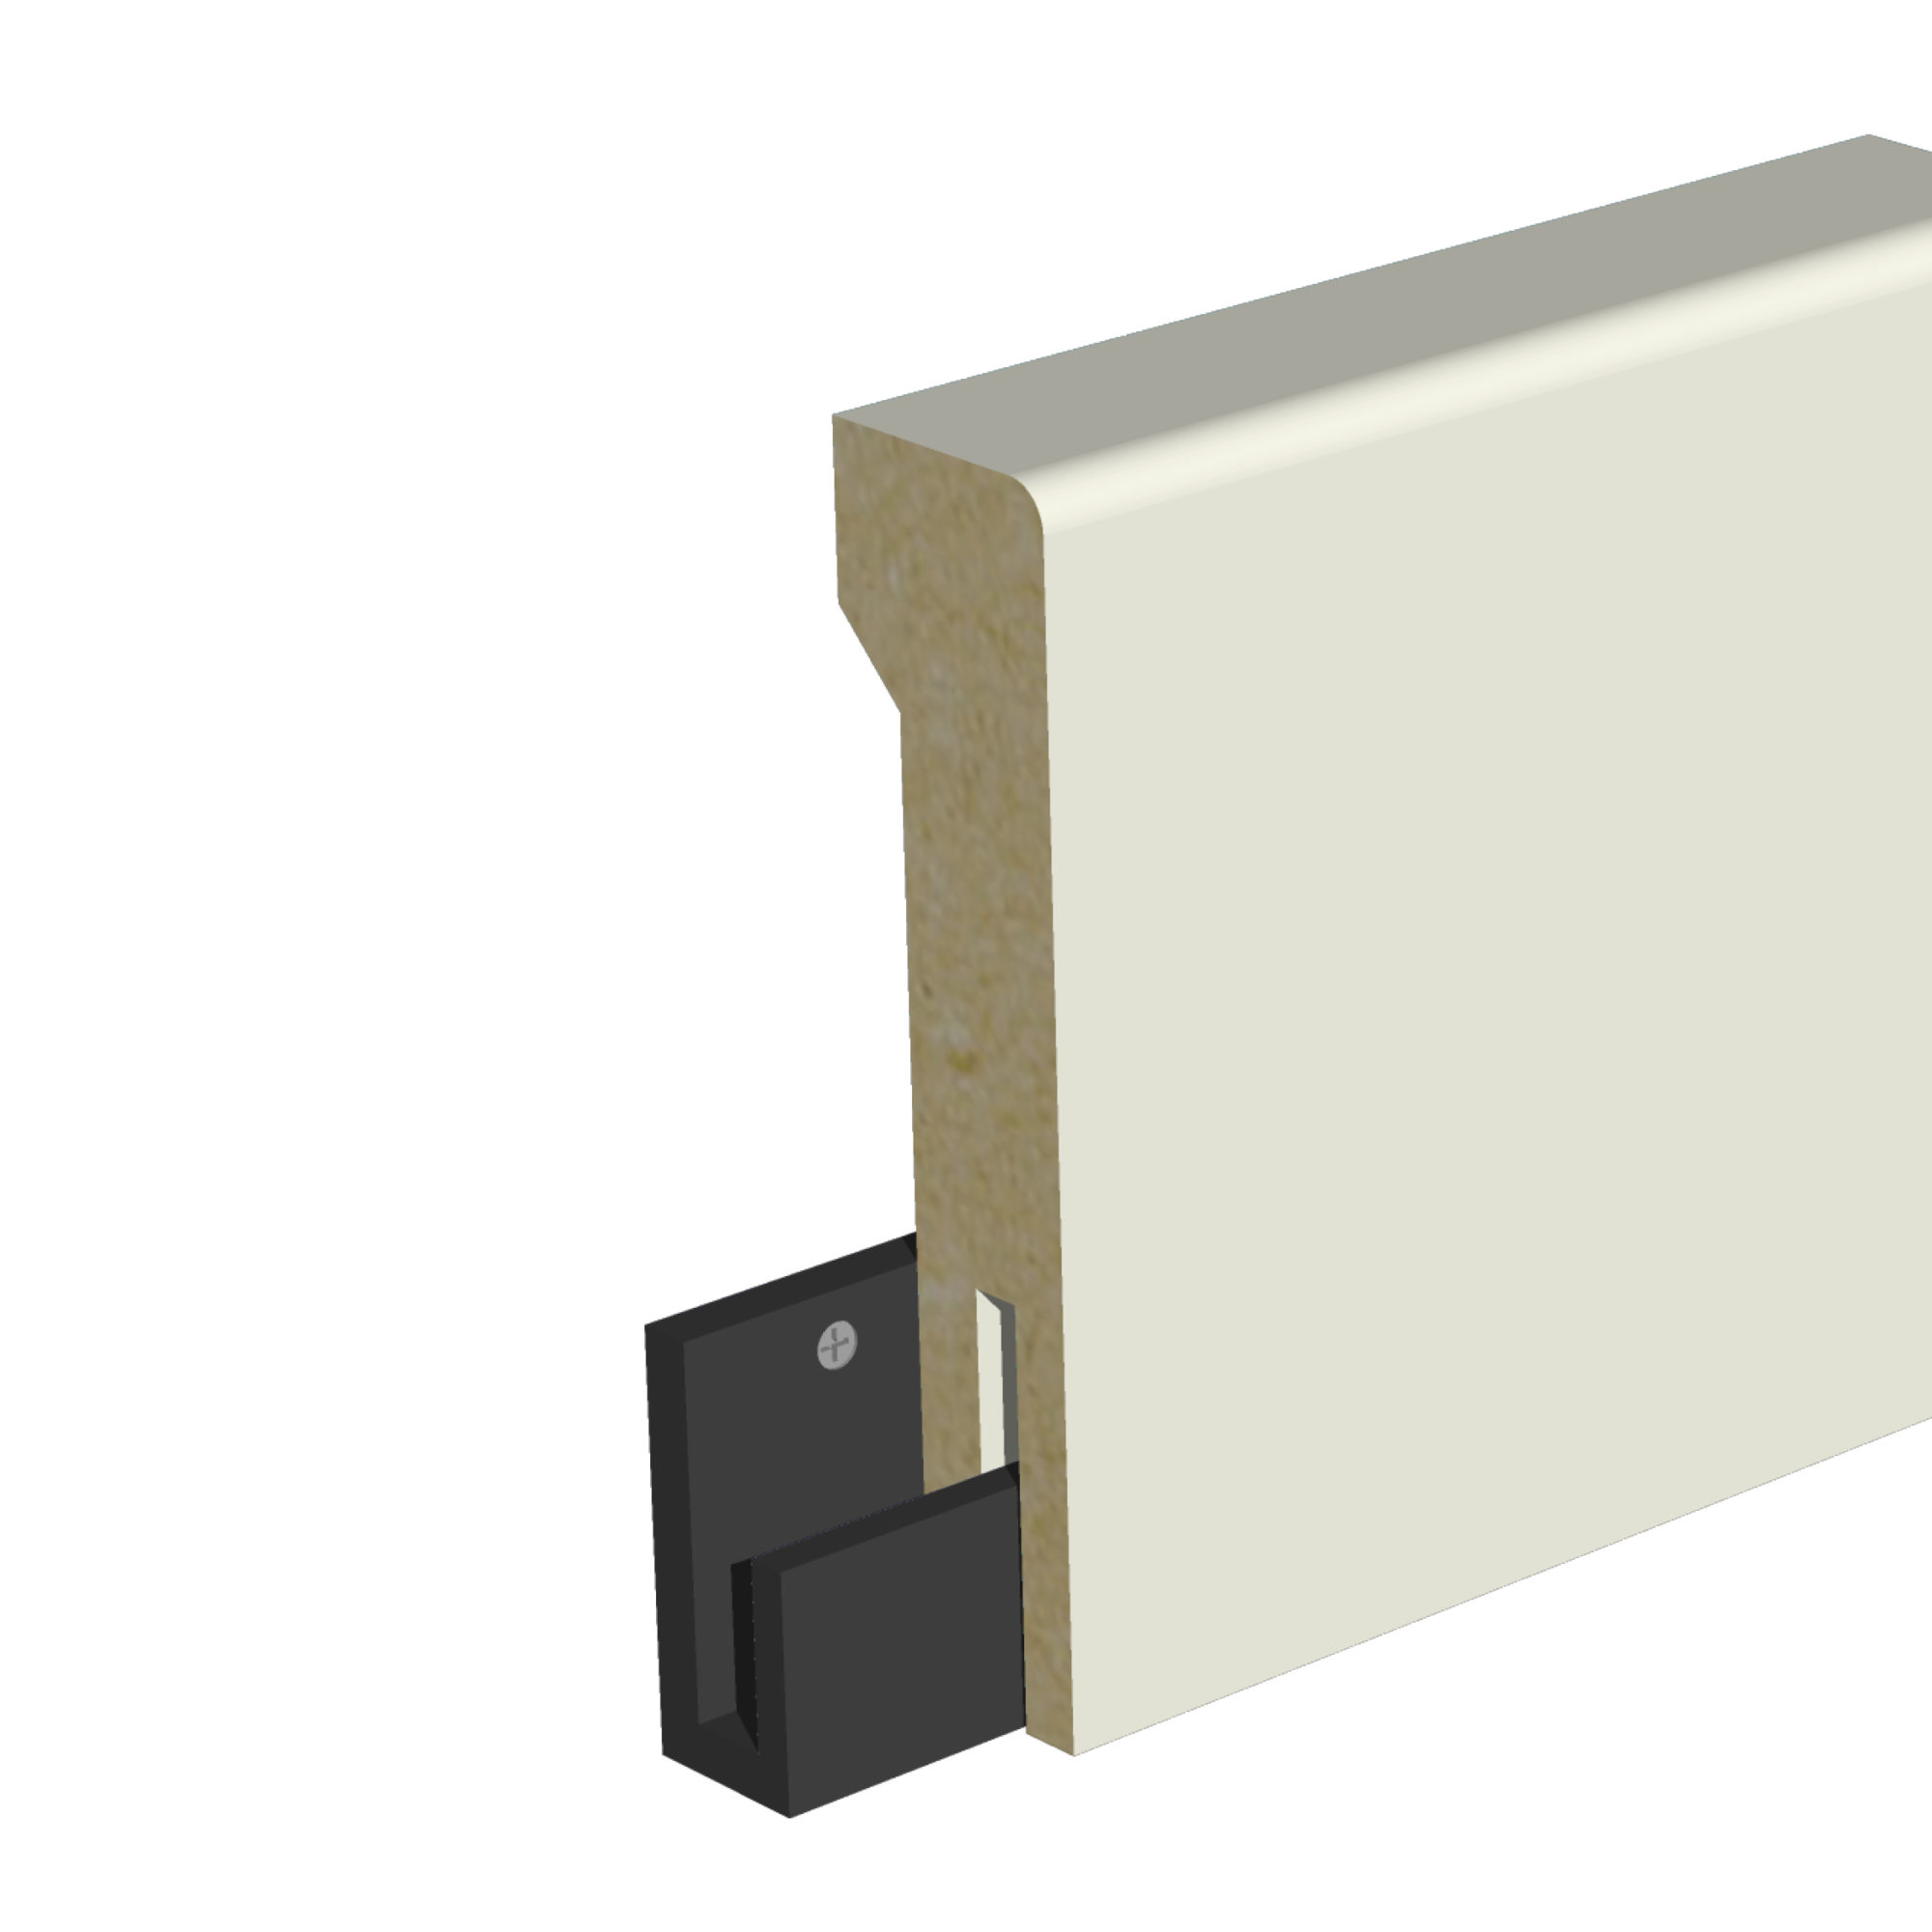 Flexisockeln är en golvsockel för enkel montering med clips